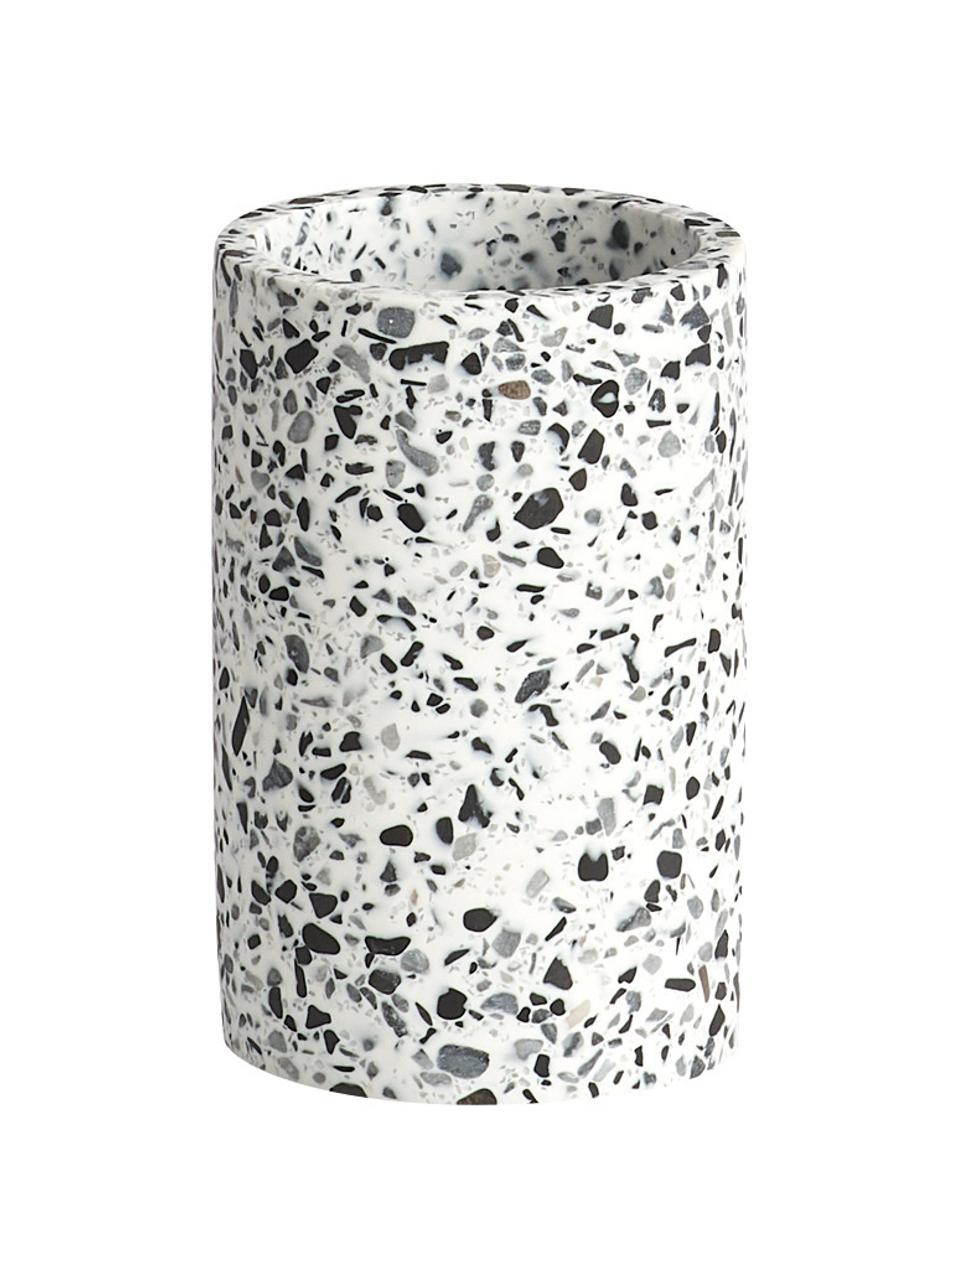 Kubek na szczoteczki z tworzywa sztucznego Terrazzo, Poliresing, Czarny, biały, Ø 7 x W 11 cm